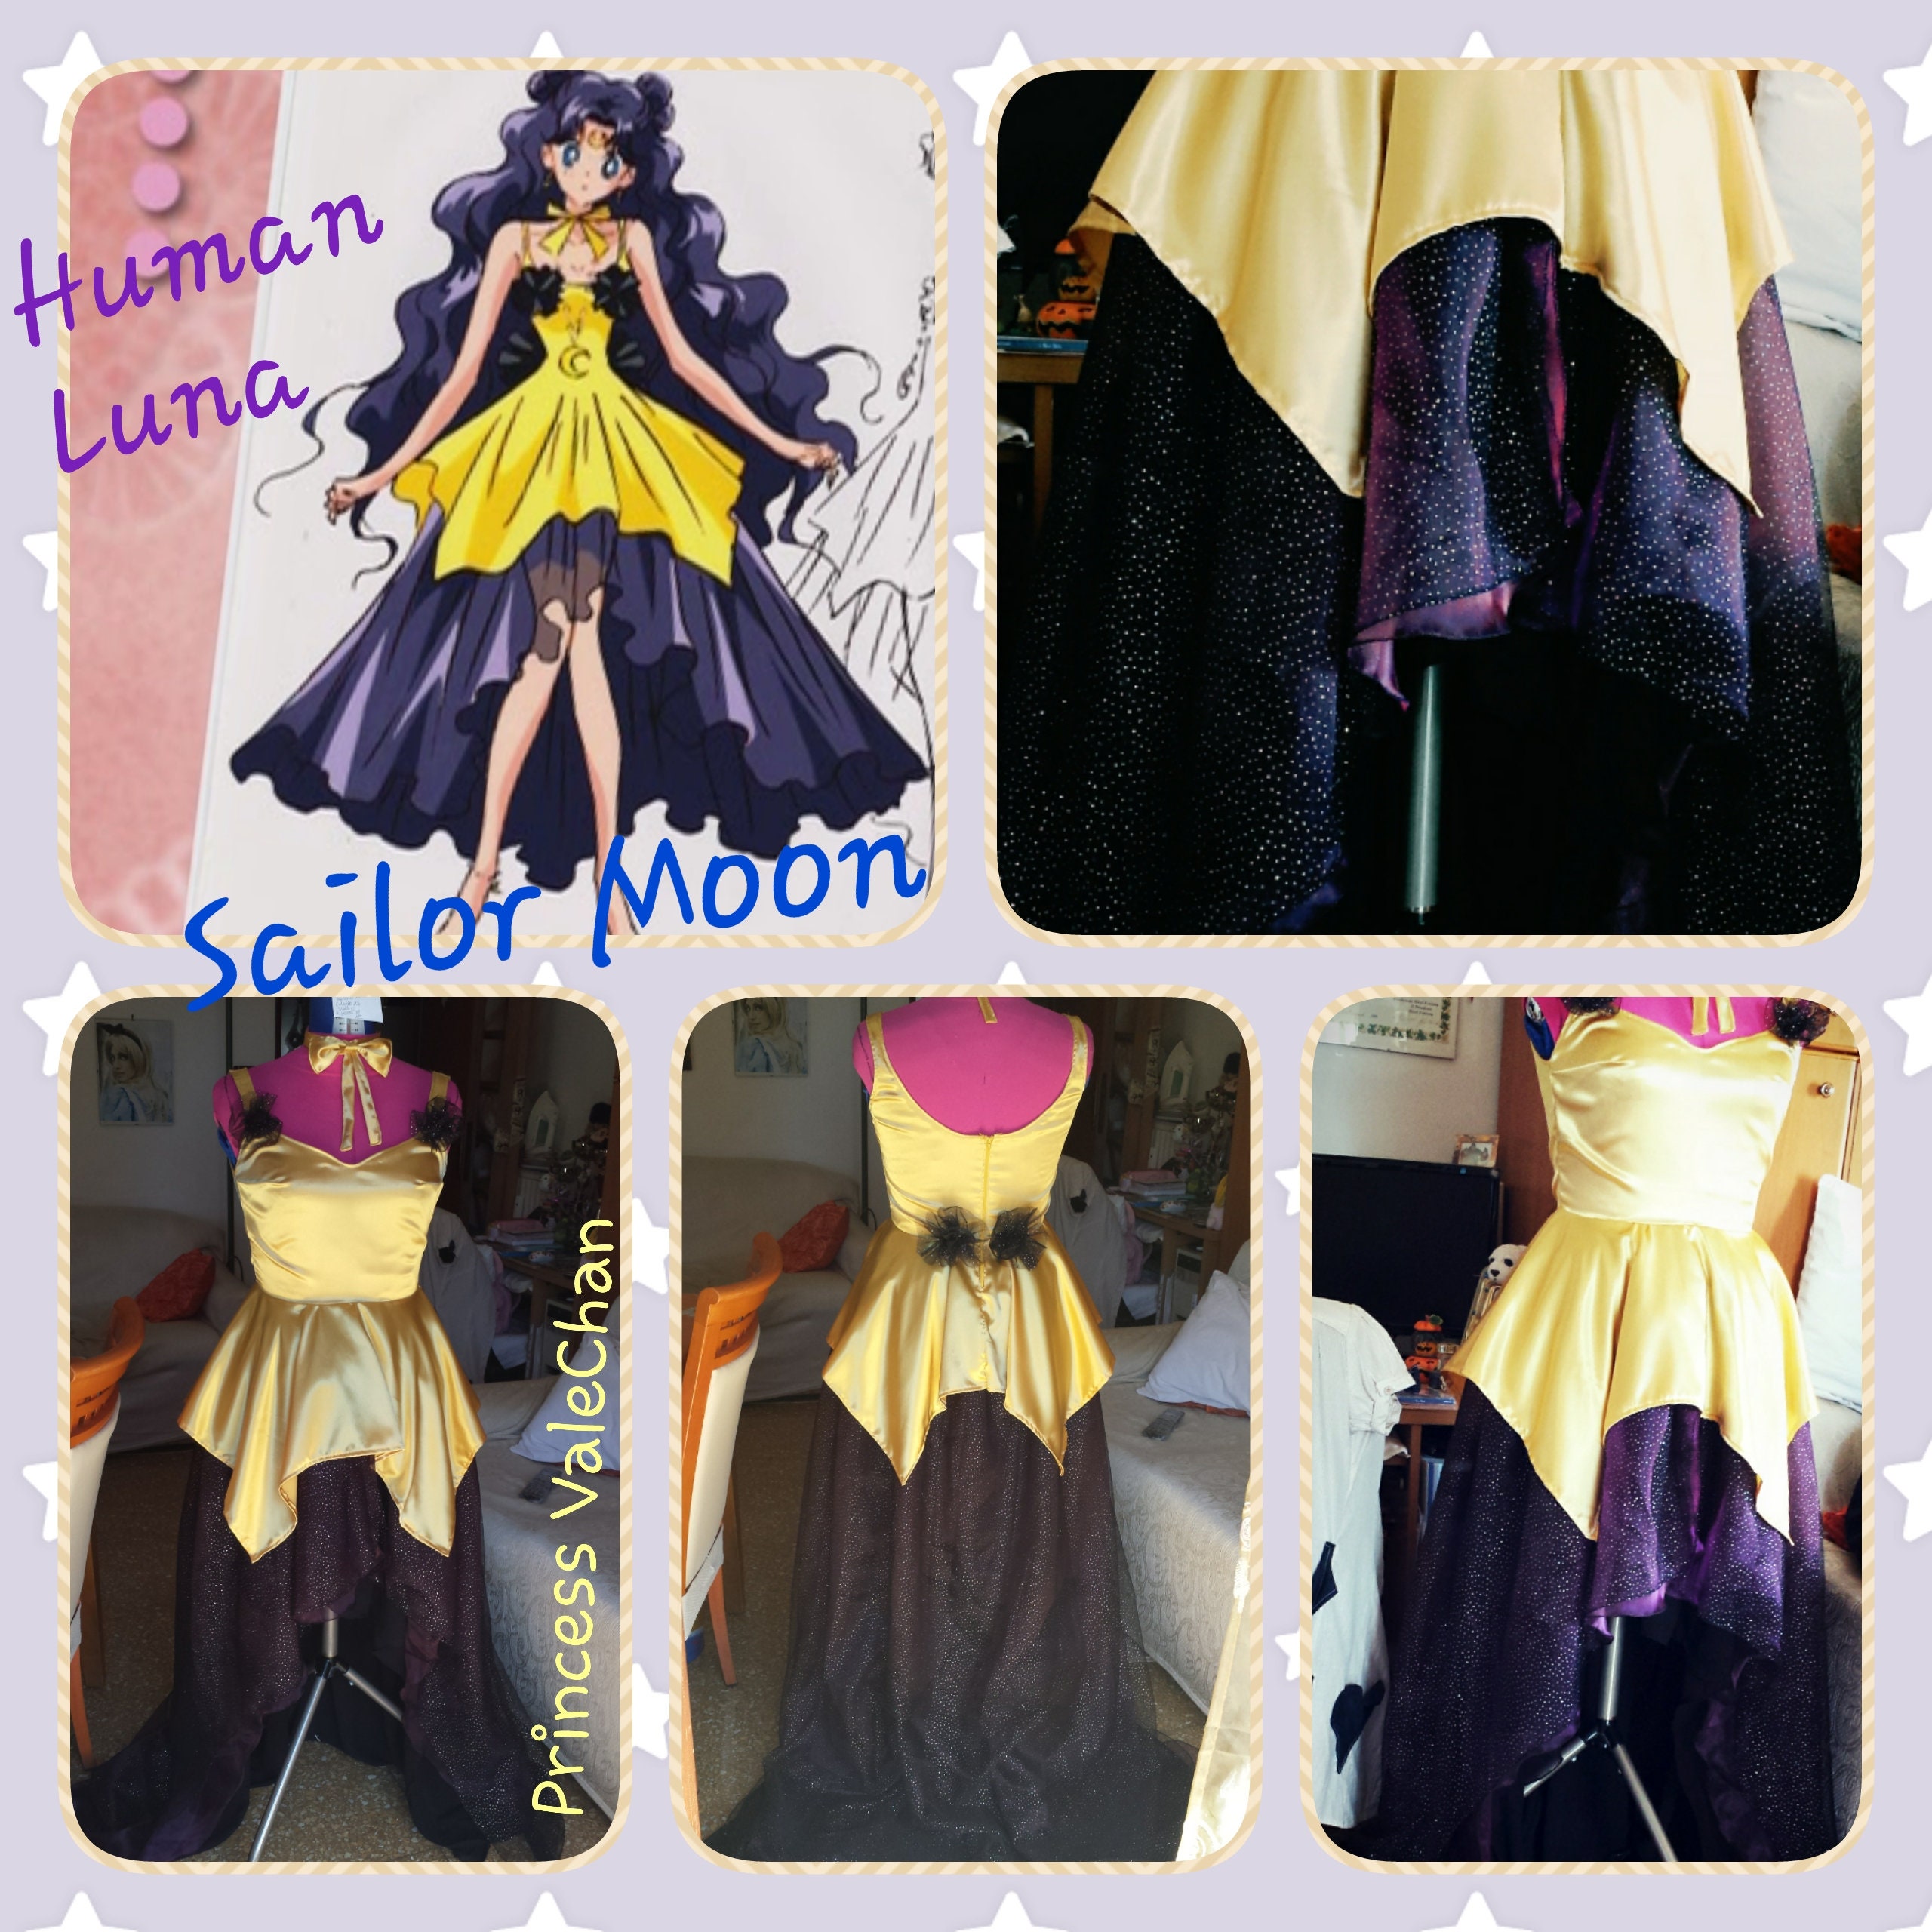 Human Luna Sailor Moon Cosplay 